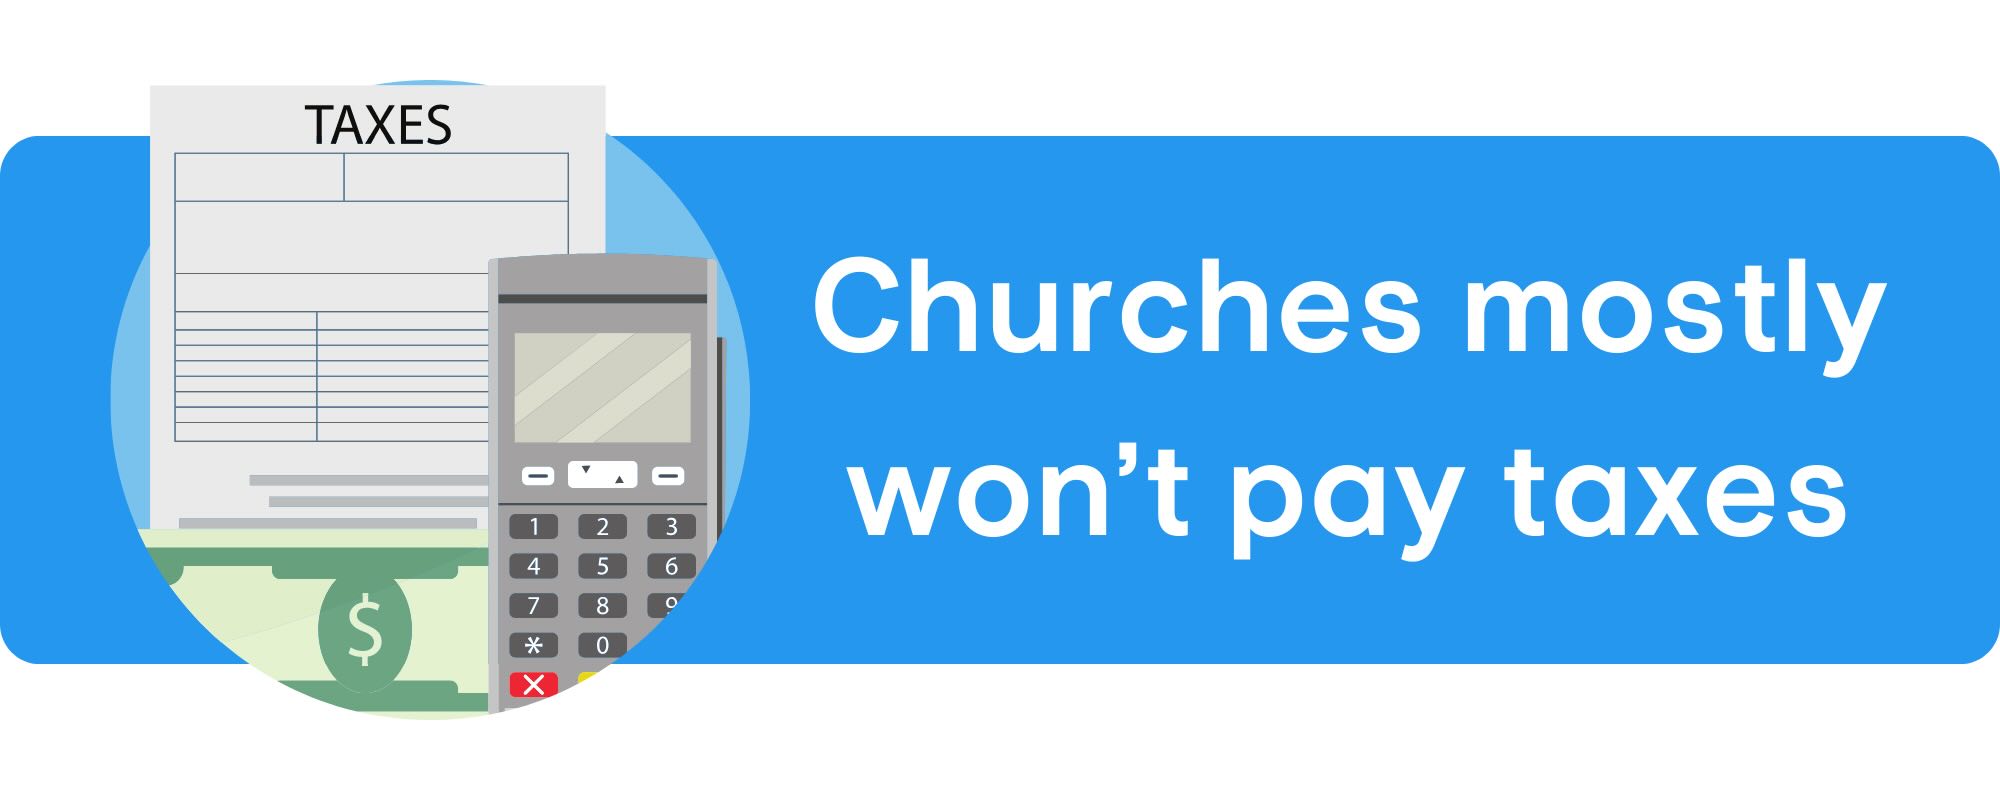 Do churches pay taxes?